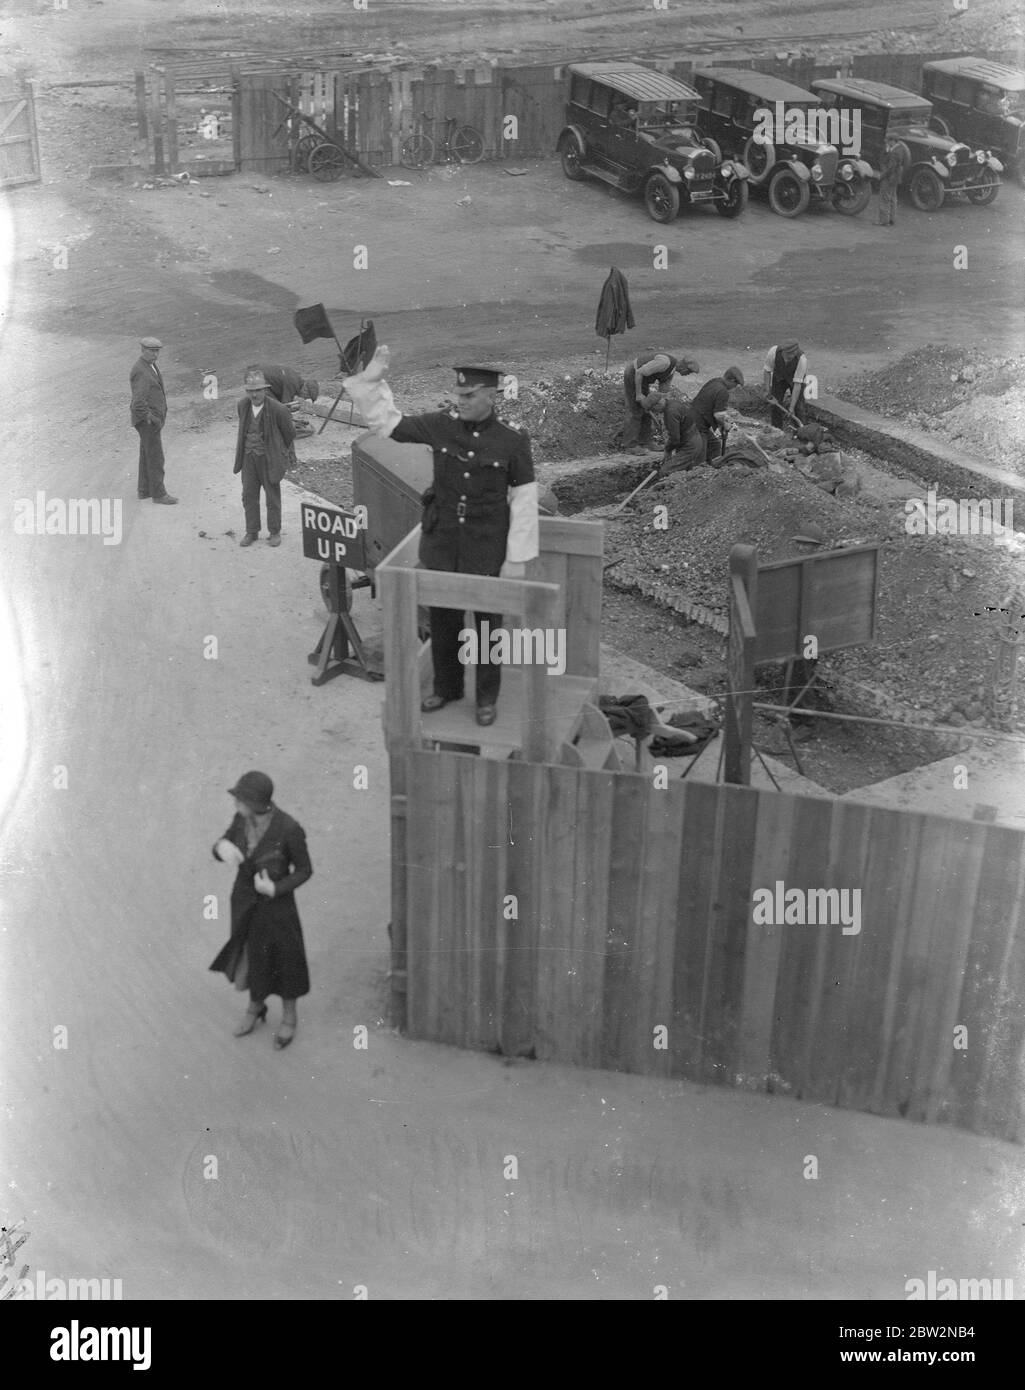 Die Verkehrslenkung von einer erhöhten Plattform in Southampton . An einer geschäftigen Kreuzung in Southampton, wo eine Reihe von Straßenarbeiten im Gange sind, wurde der Verkehrspolizist mit einer Plattform ausgestattet, von der aus der Verkehr zu lenken. Foto zeigt, ein Polizist, der den Verkehr von der erhöhten Plattform in Southampton leitet. 23. April 1934 Stockfoto